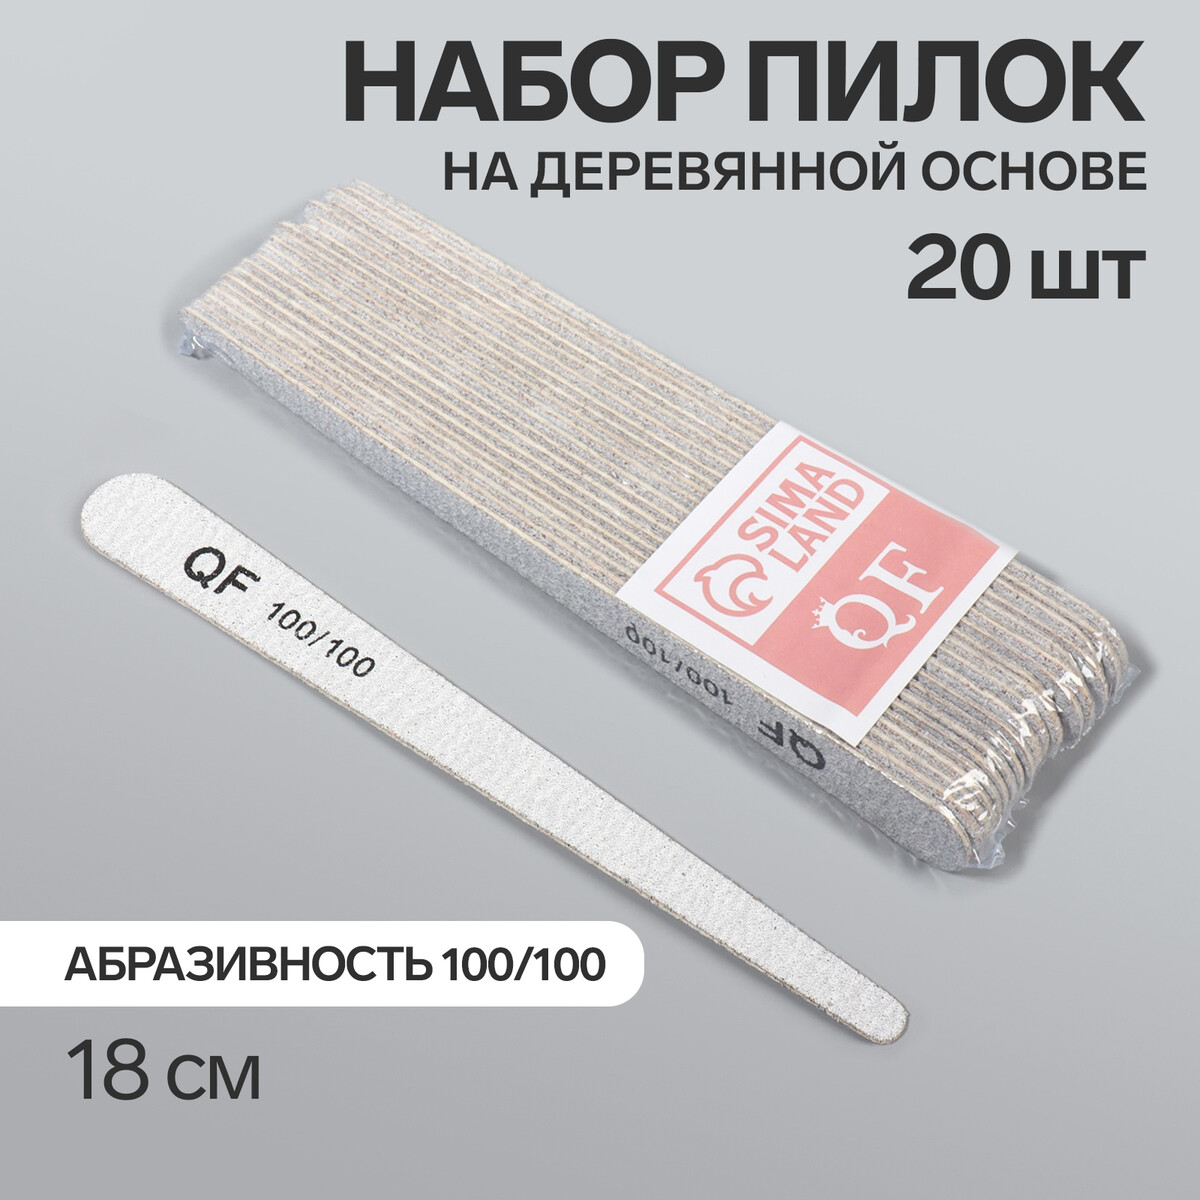 Пилка-наждак, набор 20 шт, деревянная основа, абразивность 100/100, 18 см, цвет серый палка основа для макраме деревянная без покрытия d 1 5 × 30 см